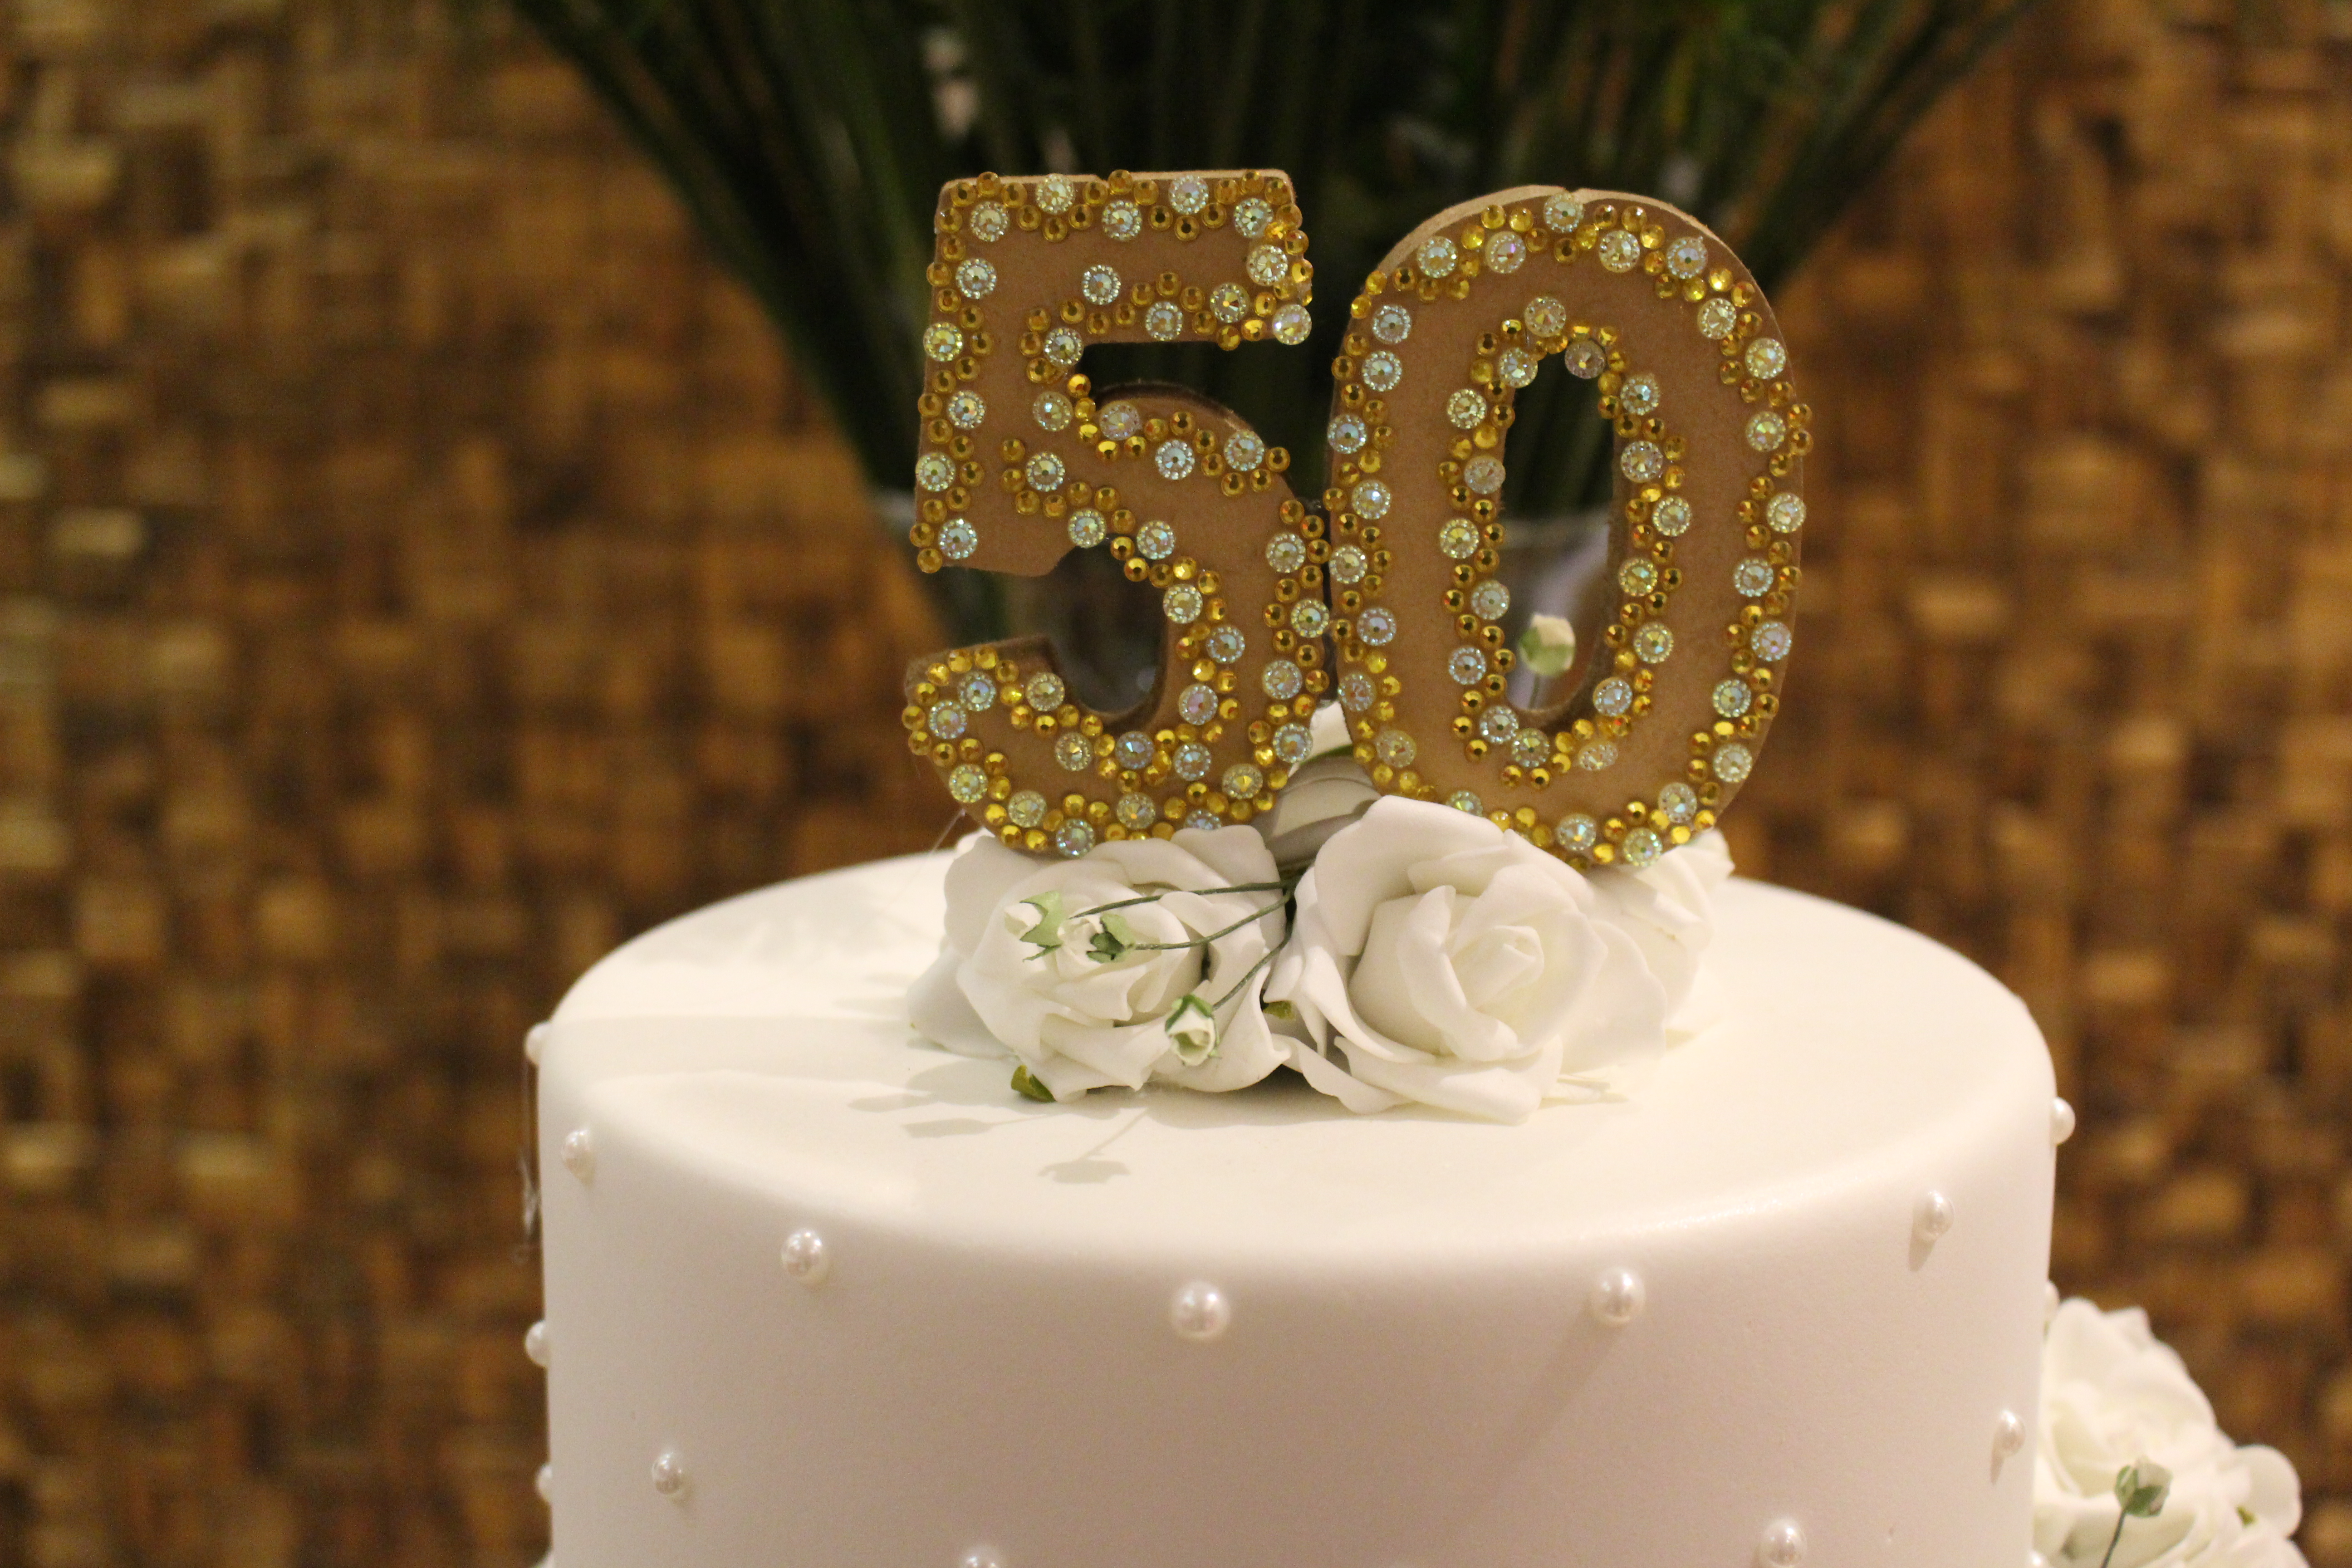 Festa de 50 anos – Minhas Ideias de Decoração